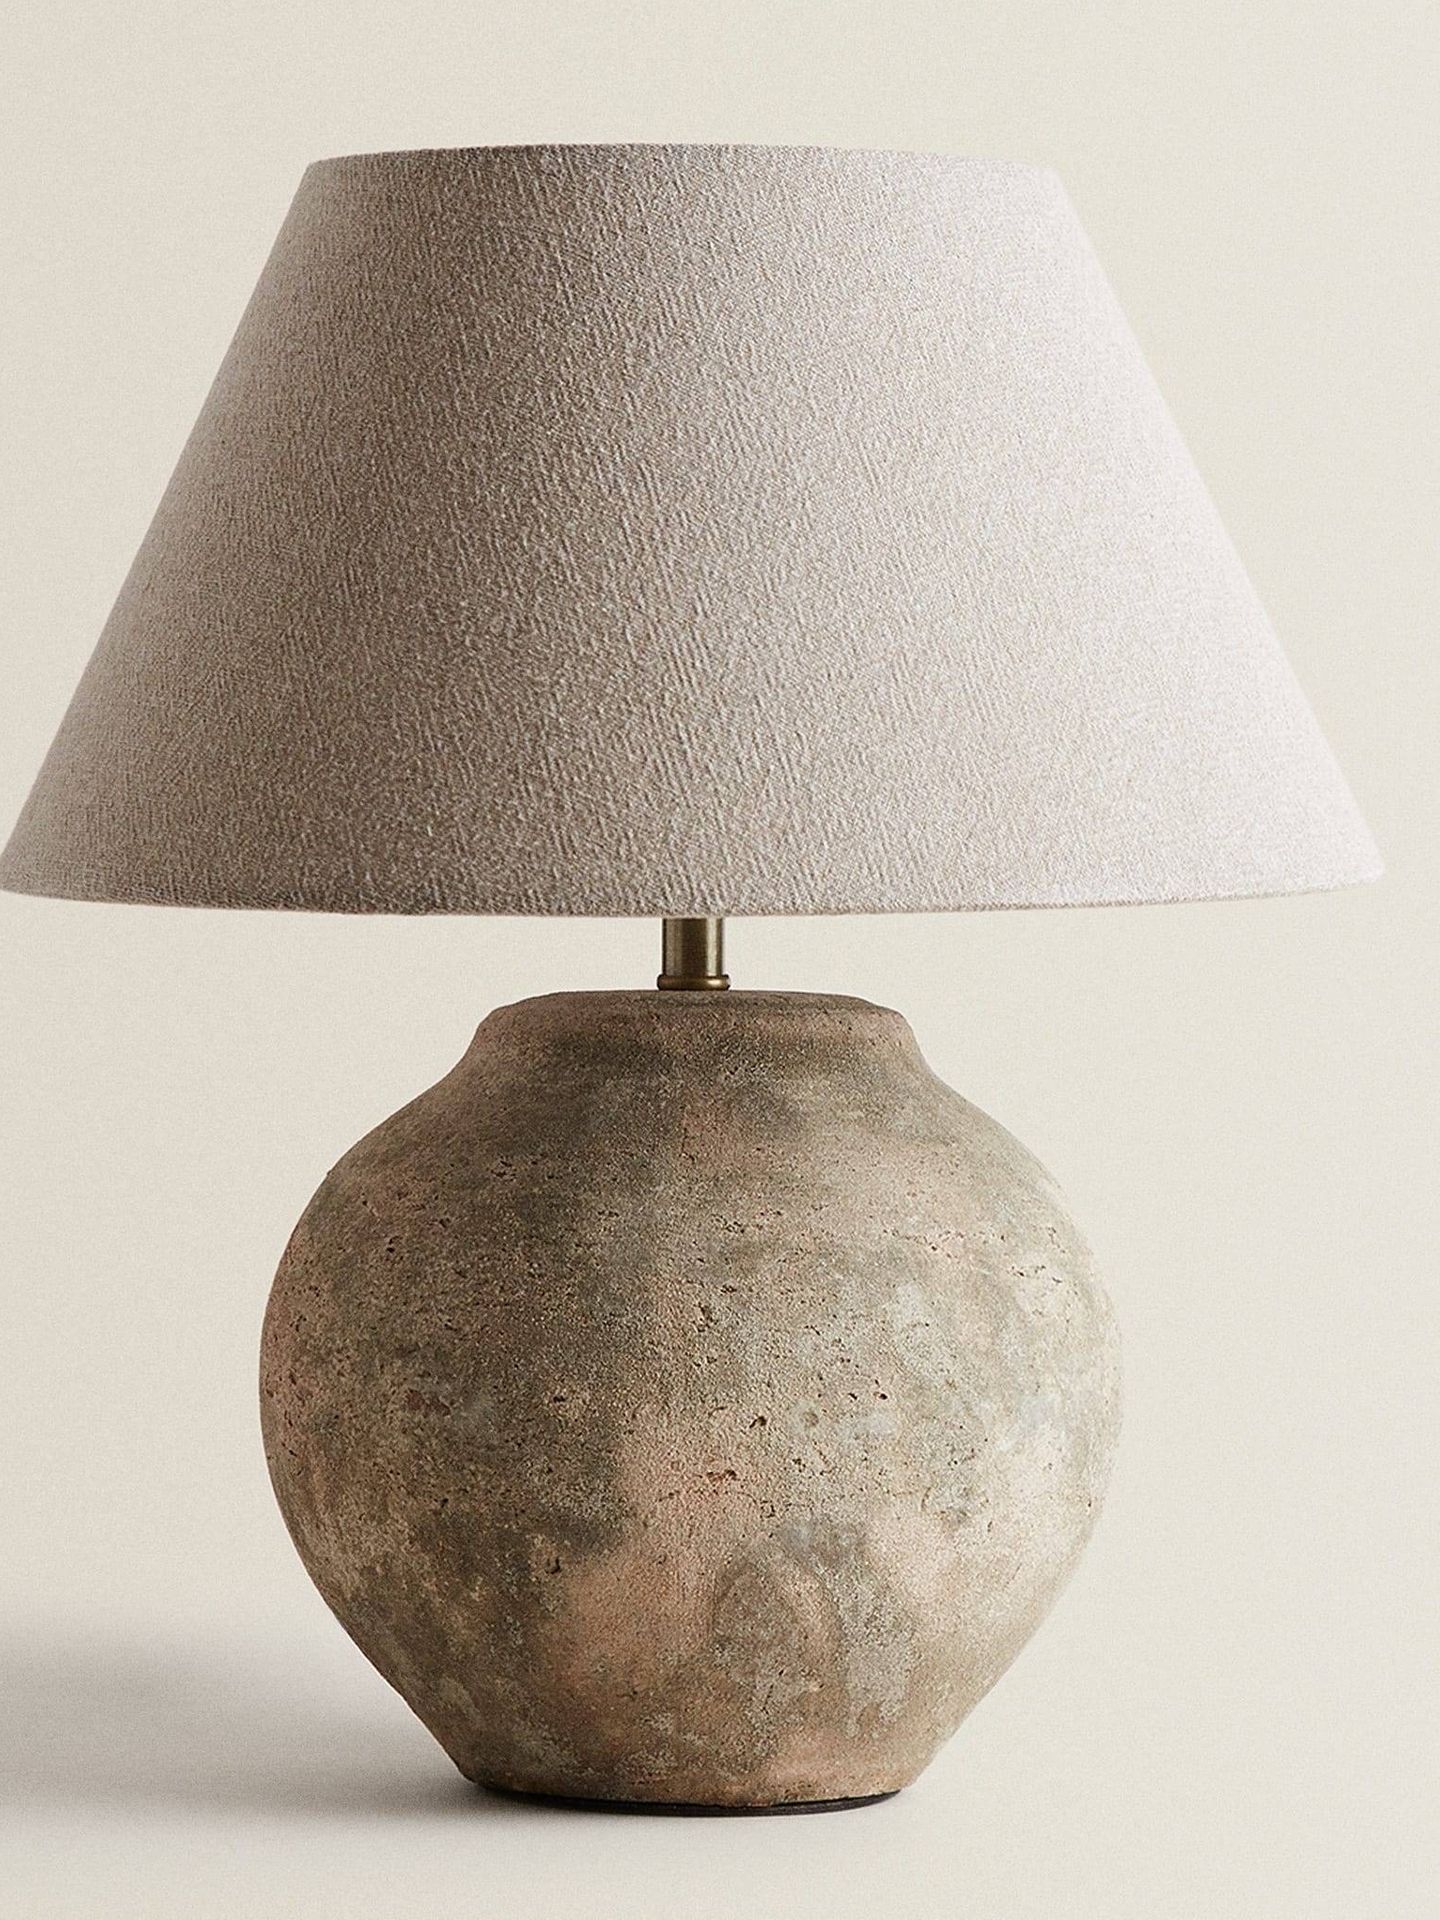 Añade una luz cálida con esta lámpara de Zara Home. (Cortesía)